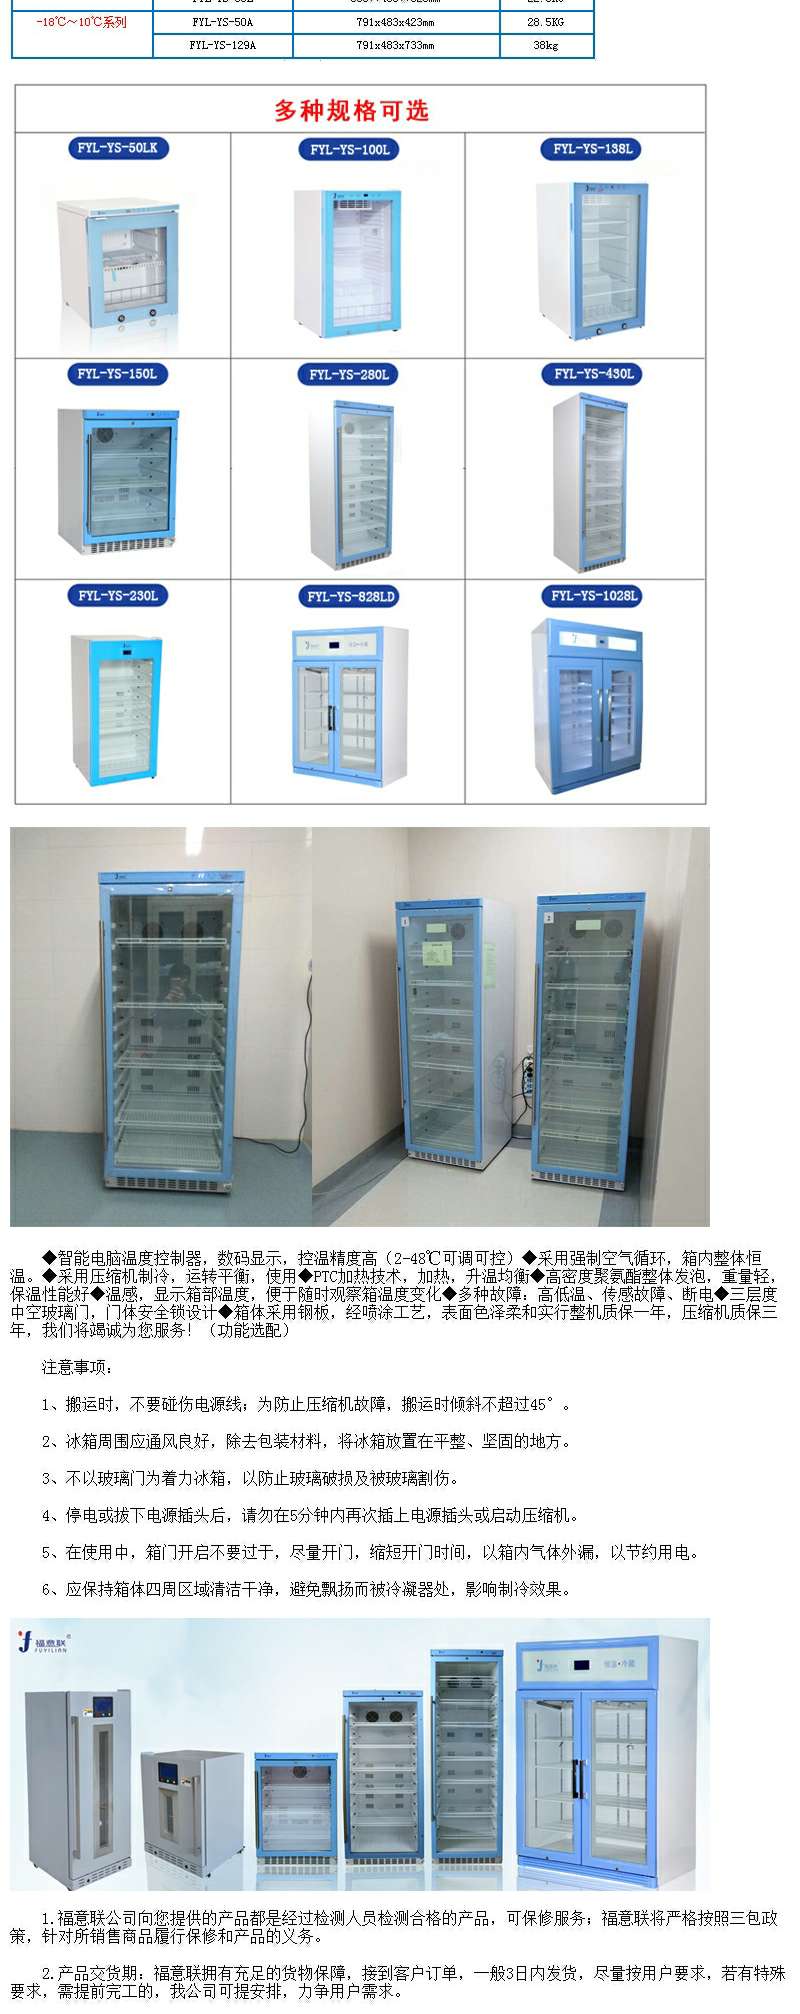 15-25度恒温箱储存药品FYL-YS-138L型恒温箱